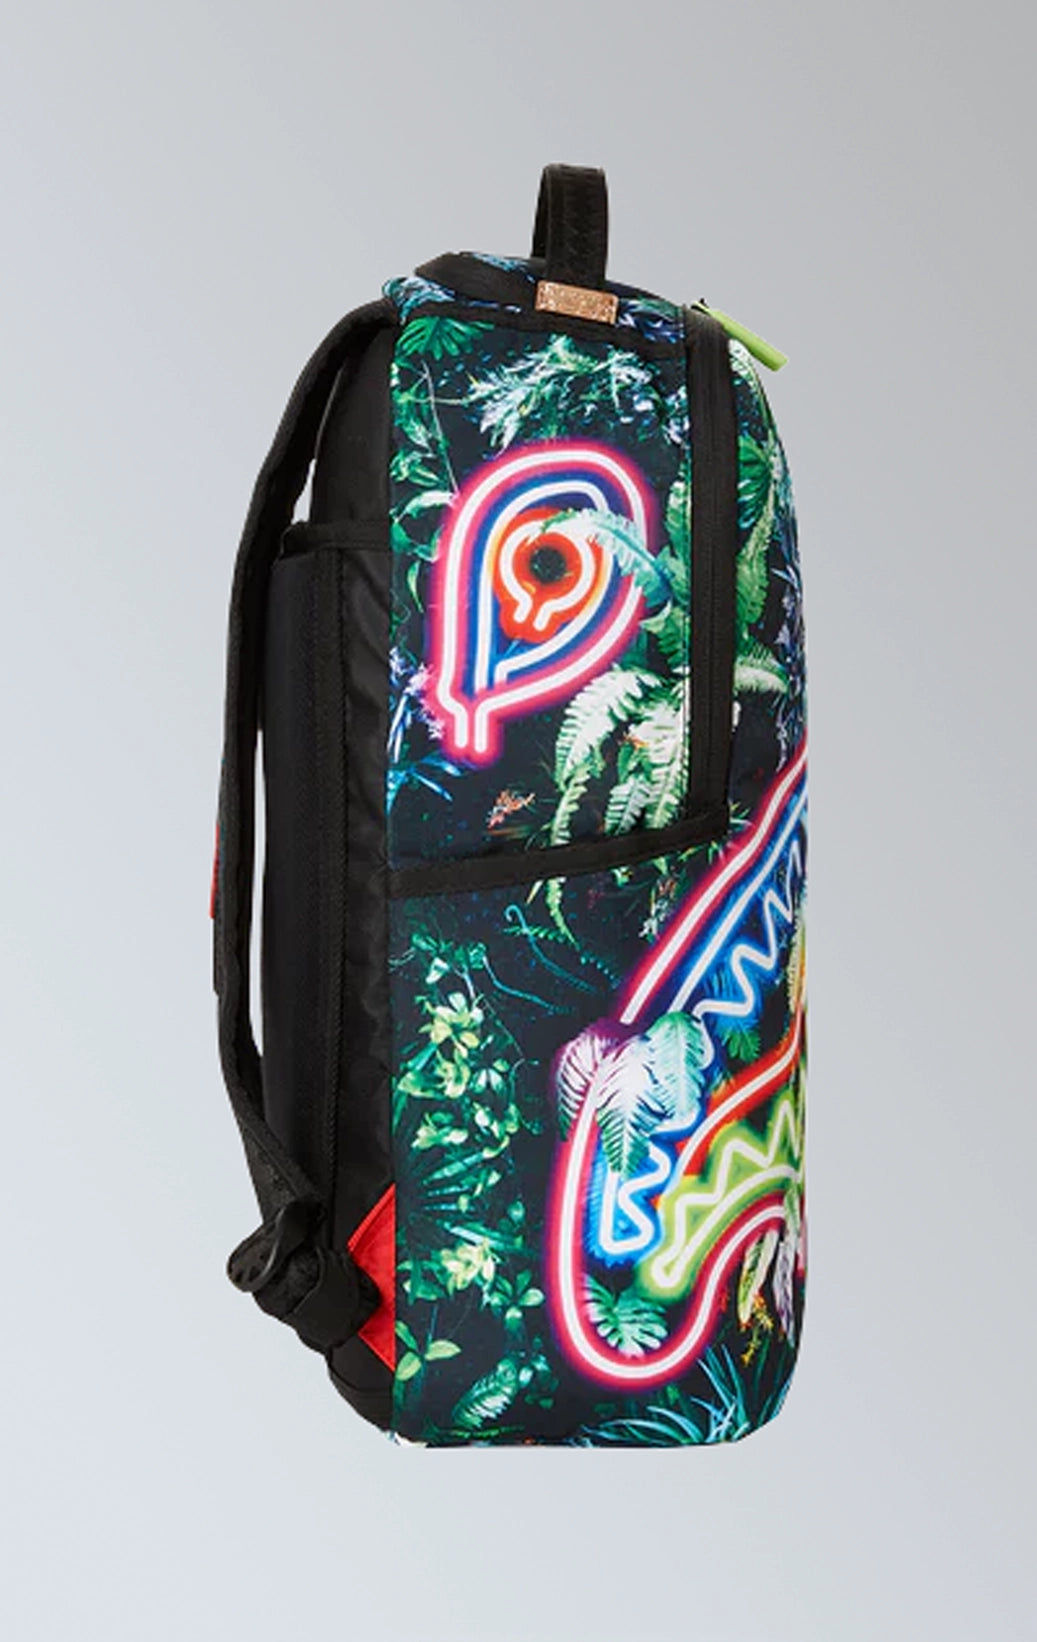 Sprayground Neon shark forest backpack